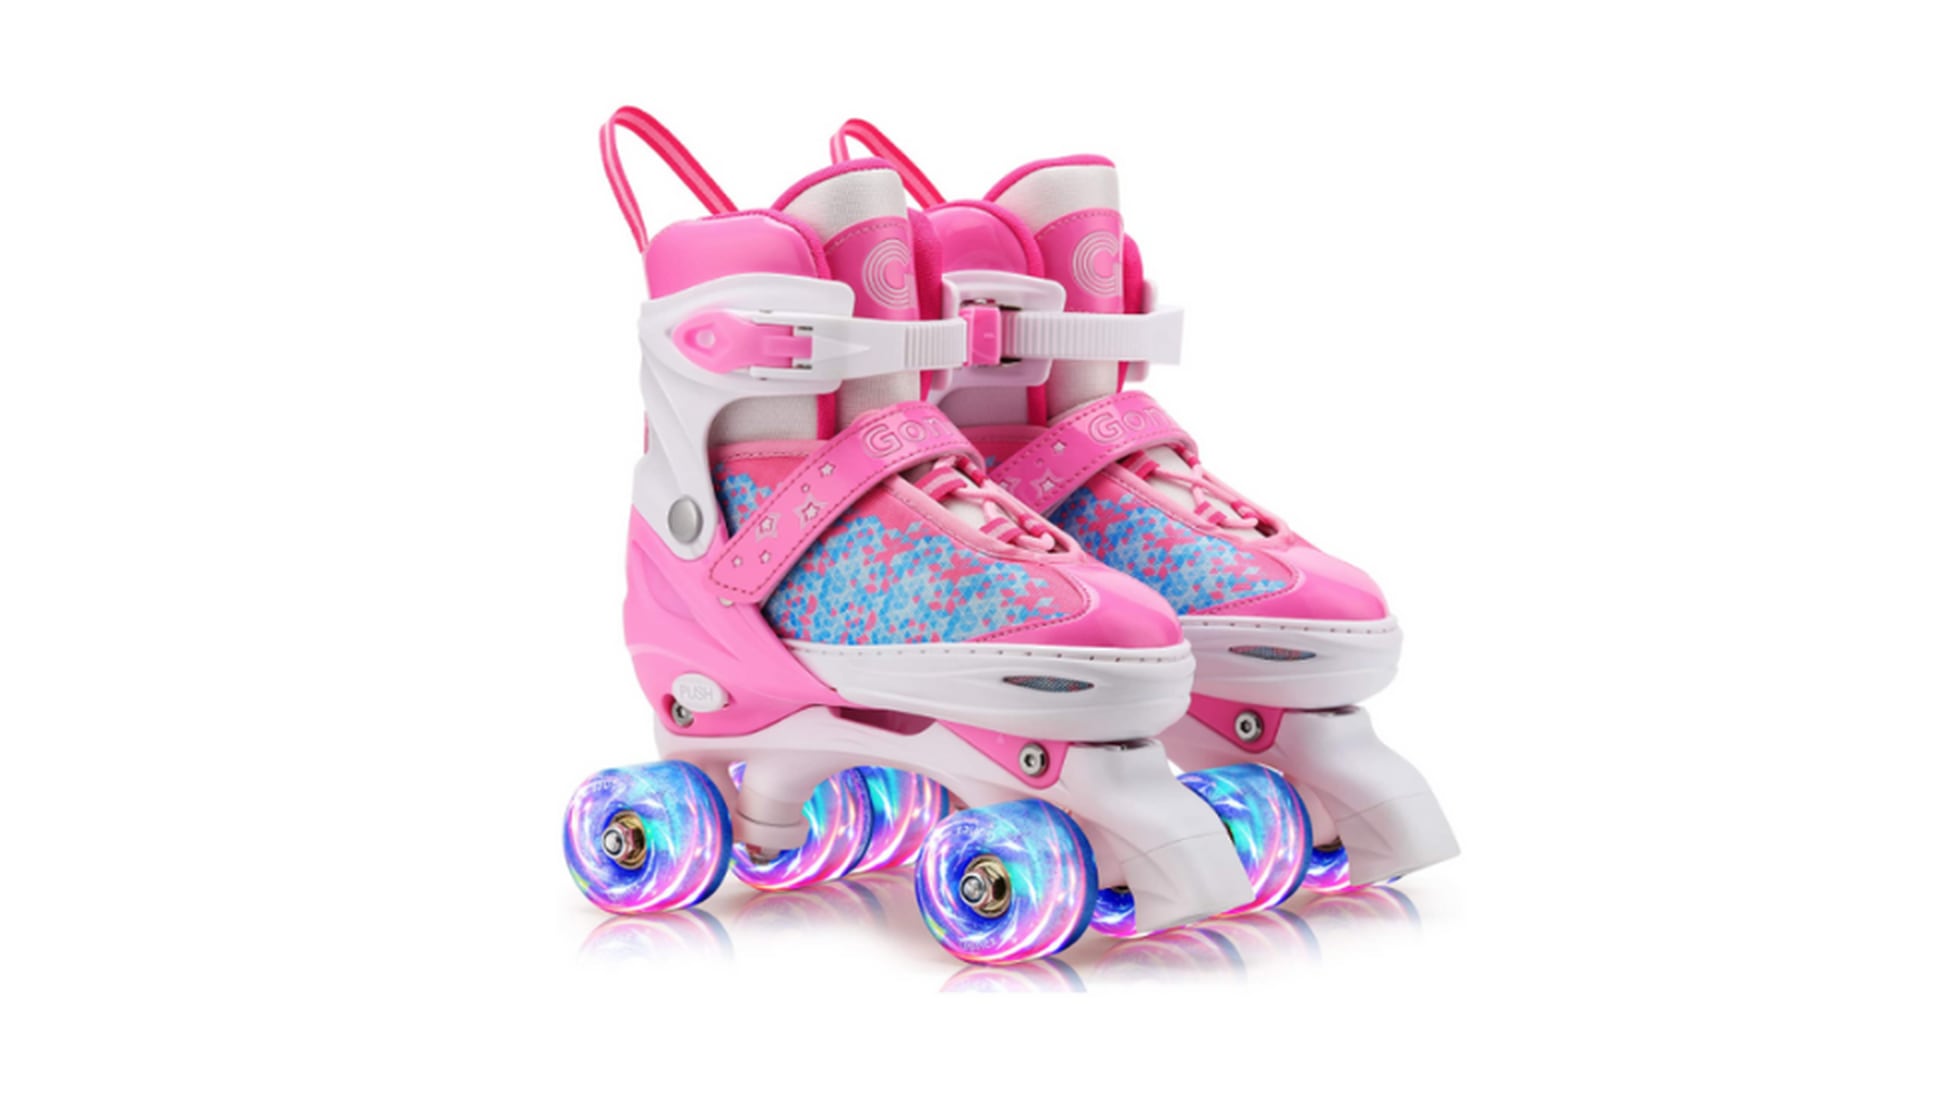 Los mejores patines de cuatro ruedas para niñas y niños